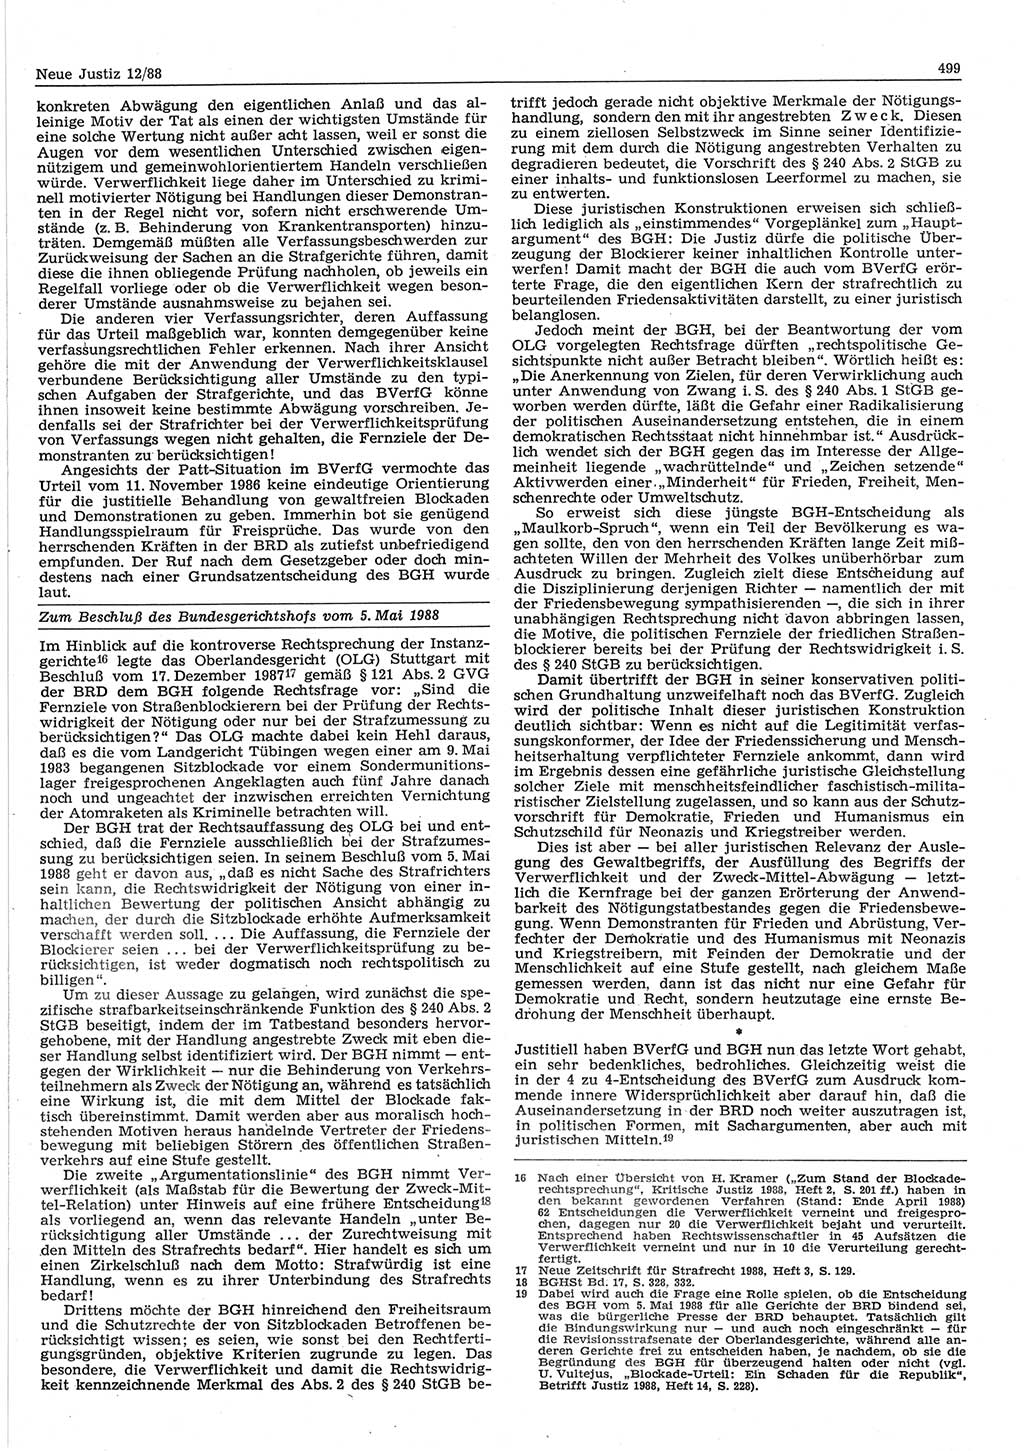 Neue Justiz (NJ), Zeitschrift für sozialistisches Recht und Gesetzlichkeit [Deutsche Demokratische Republik (DDR)], 42. Jahrgang 1988, Seite 499 (NJ DDR 1988, S. 499)